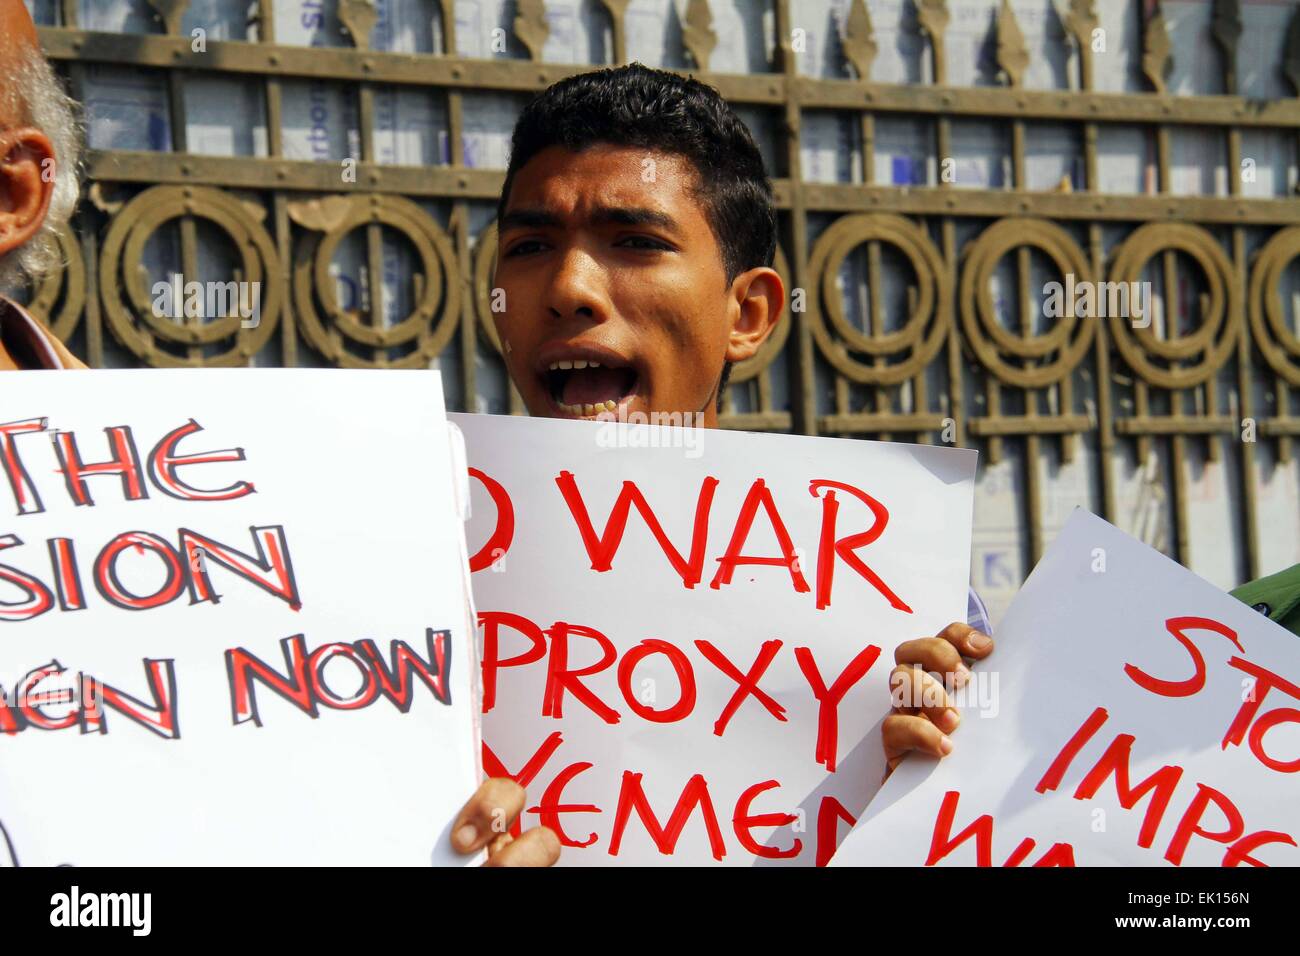 (150404)--Kairo, 4. April 2015 (Xinhua)--A Mann steht vor der Botschaft von Saudi-Arabien, Saudi Arabien-geführten Luftangriffe auf Jemen in Kairo, die Hauptstadt von Ägypten, 4. April 2015 zu protestieren. Rund zwei Dutzend jemenitischen und ägyptischen Aktivisten hielten Banner und riefen Slogans hier am Samstag, Saudi Arabien-geführte Koalition kontinuierliche Luftangriffe auf Jemen zu protestieren. (Xinhua/Ahmed Gomaa) Stockfoto